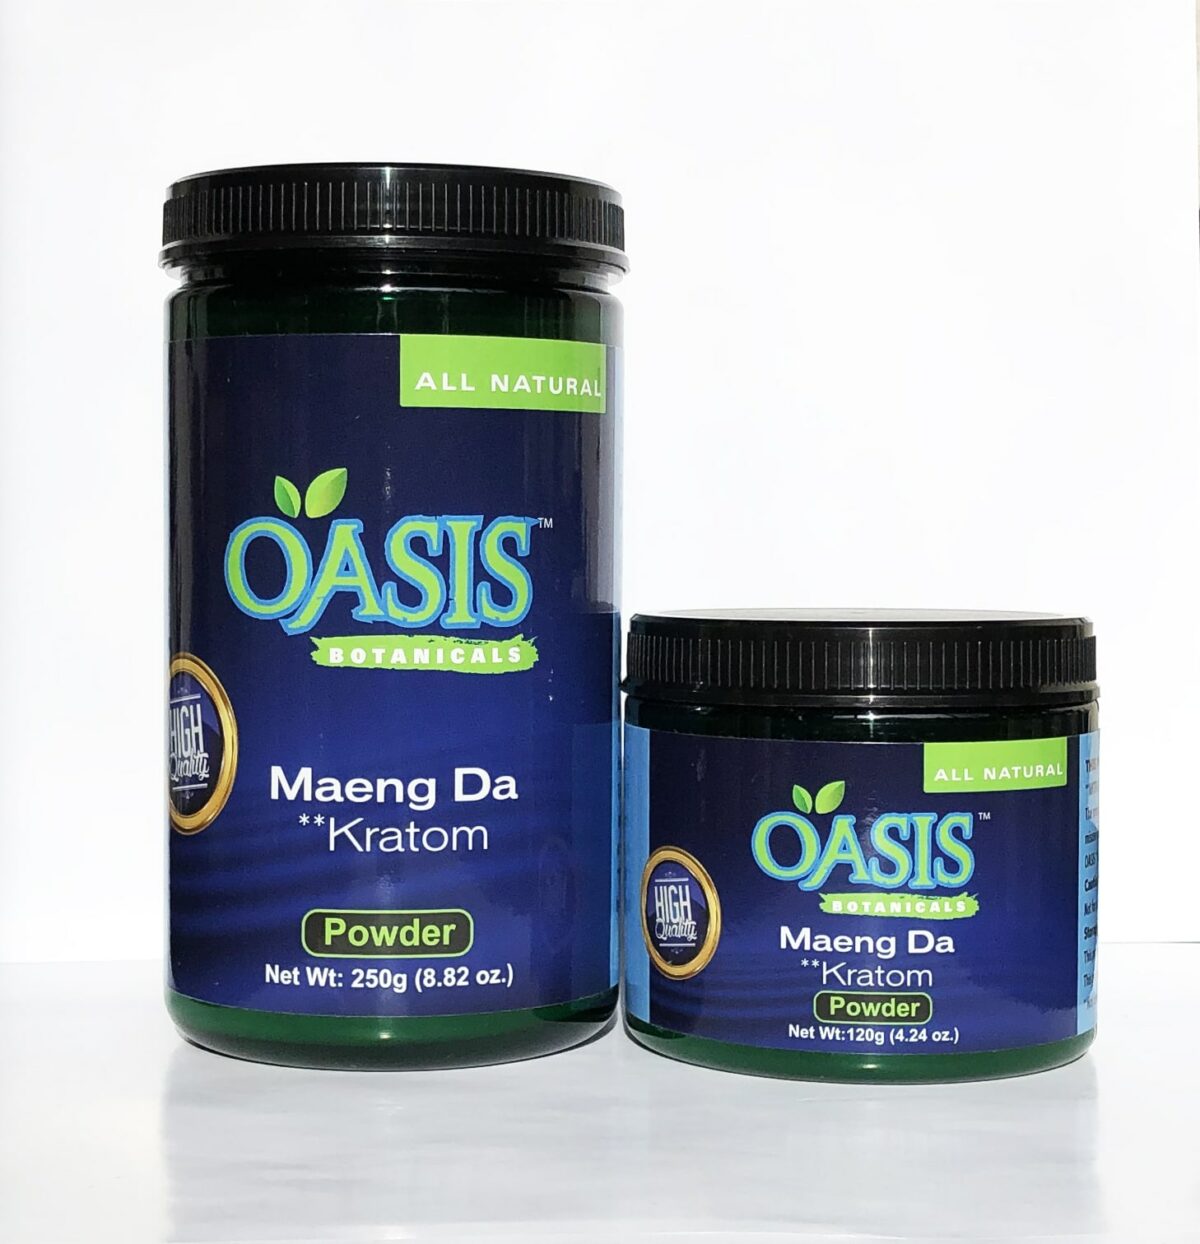 Oasis Maeng Da Powder